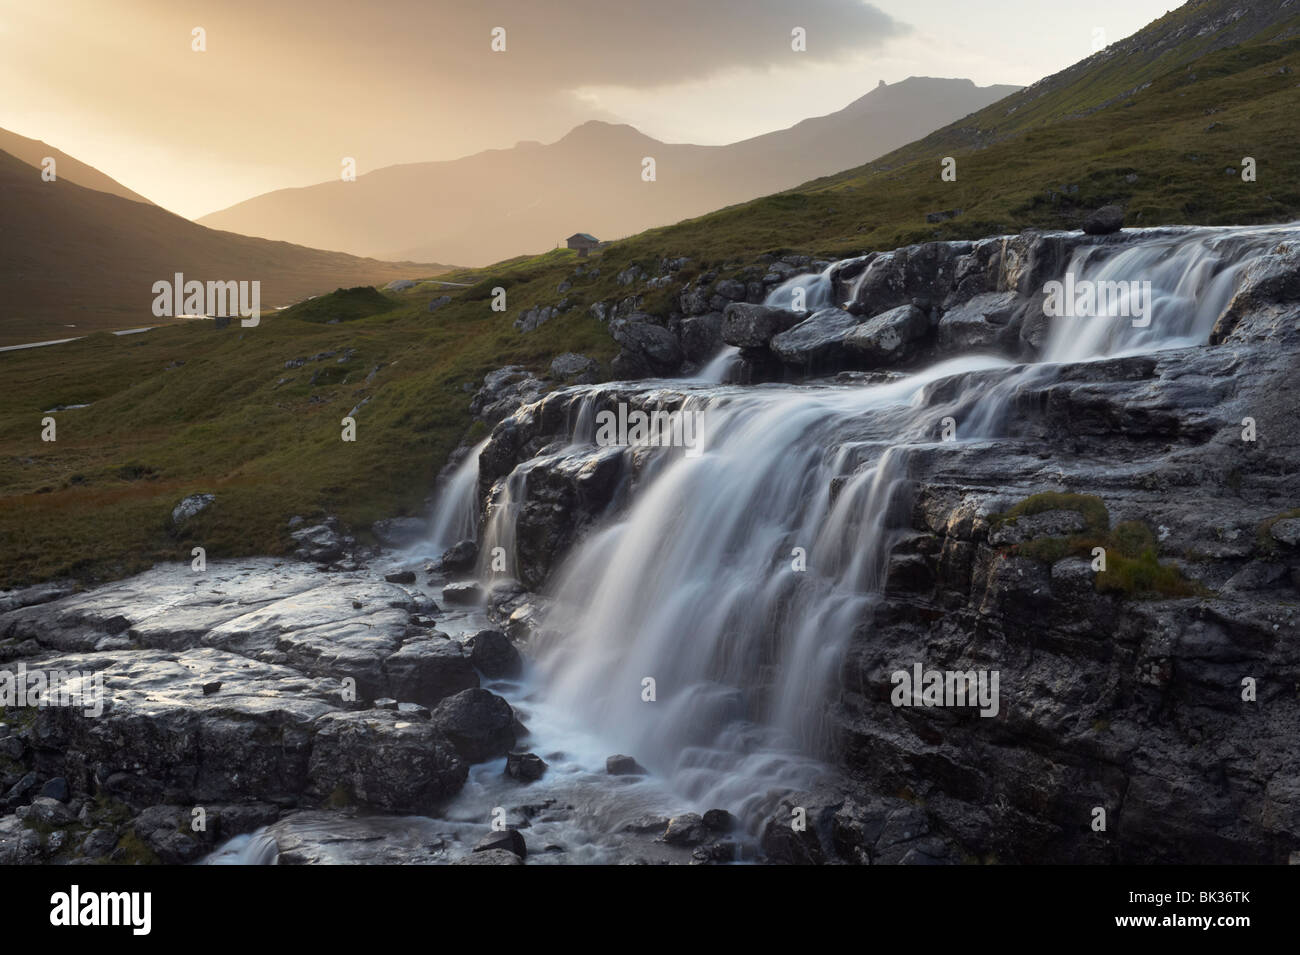 Heljardalsa waterfall in Saksunardalur valley near Saksun, Streymoy, Faroe Islands (Faroes), Denmark, Europe Stock Photo